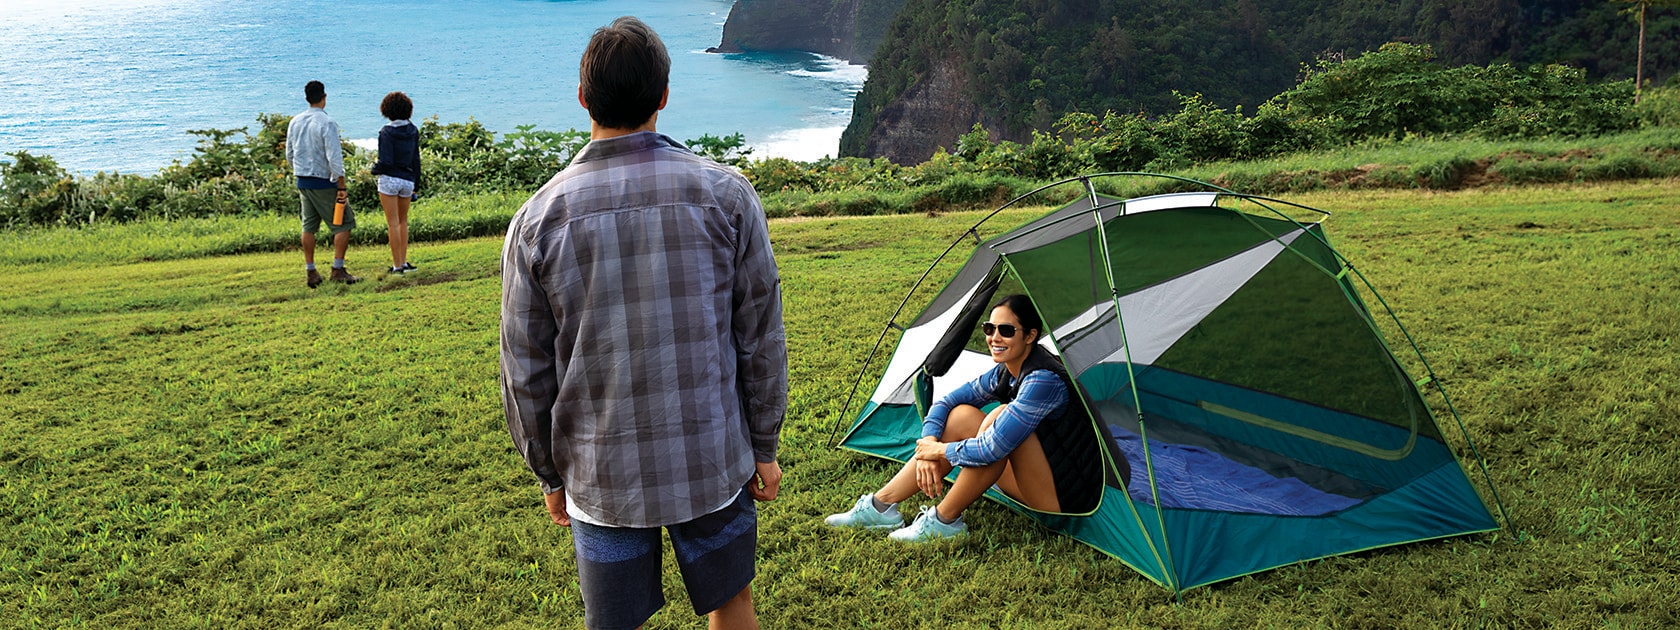 homme debout près d'une femme assise dans une tente sur une colline verdoyante surplombant les falaises au bord de l'océan